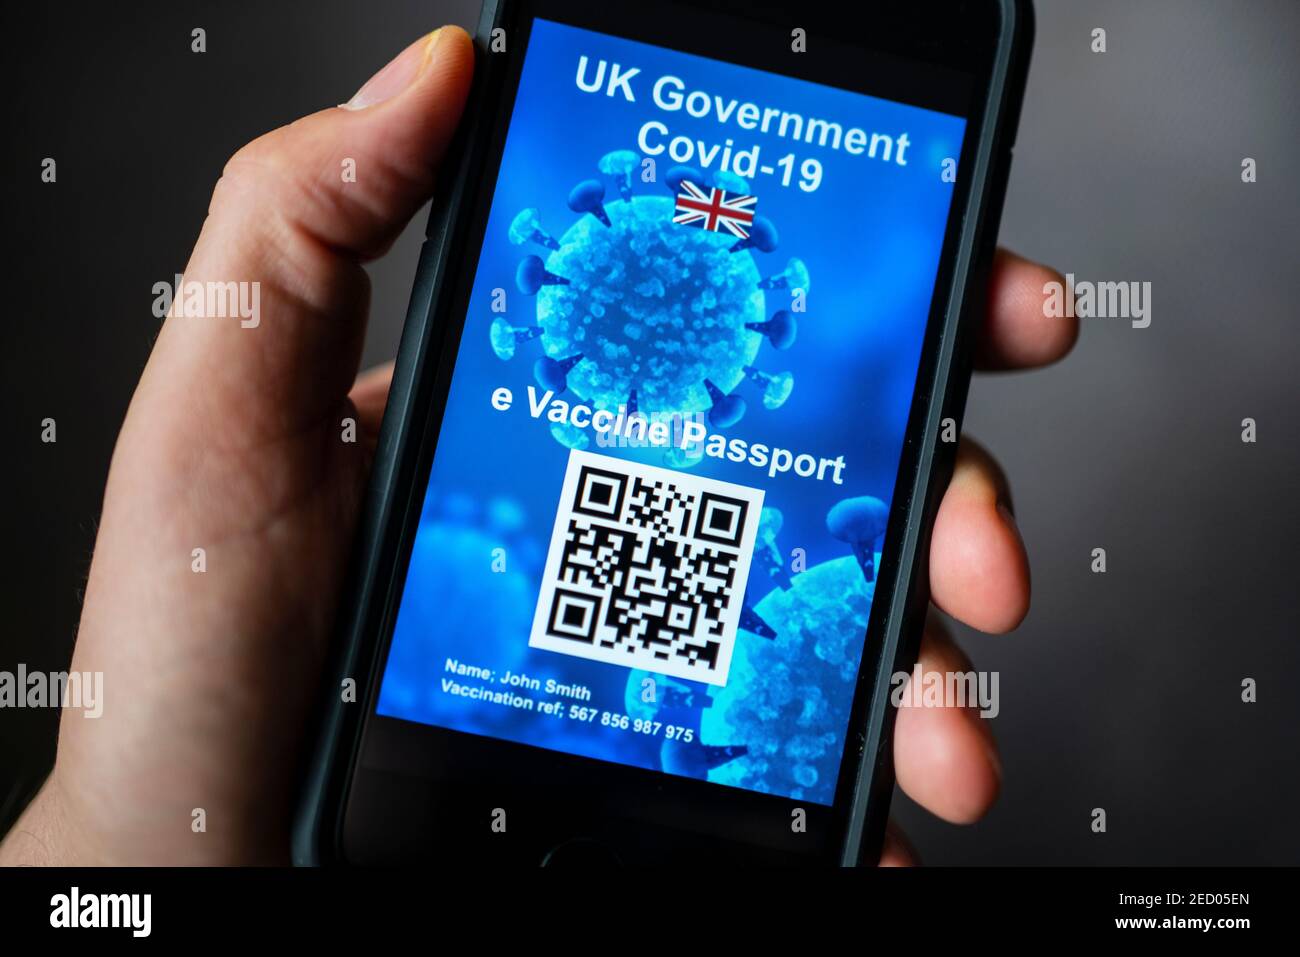 Conception conceptuelle d'un éventuel passeport de vaccination électronique britannique Covid-19 utilisant le code QR sur un smartphone. Banque D'Images